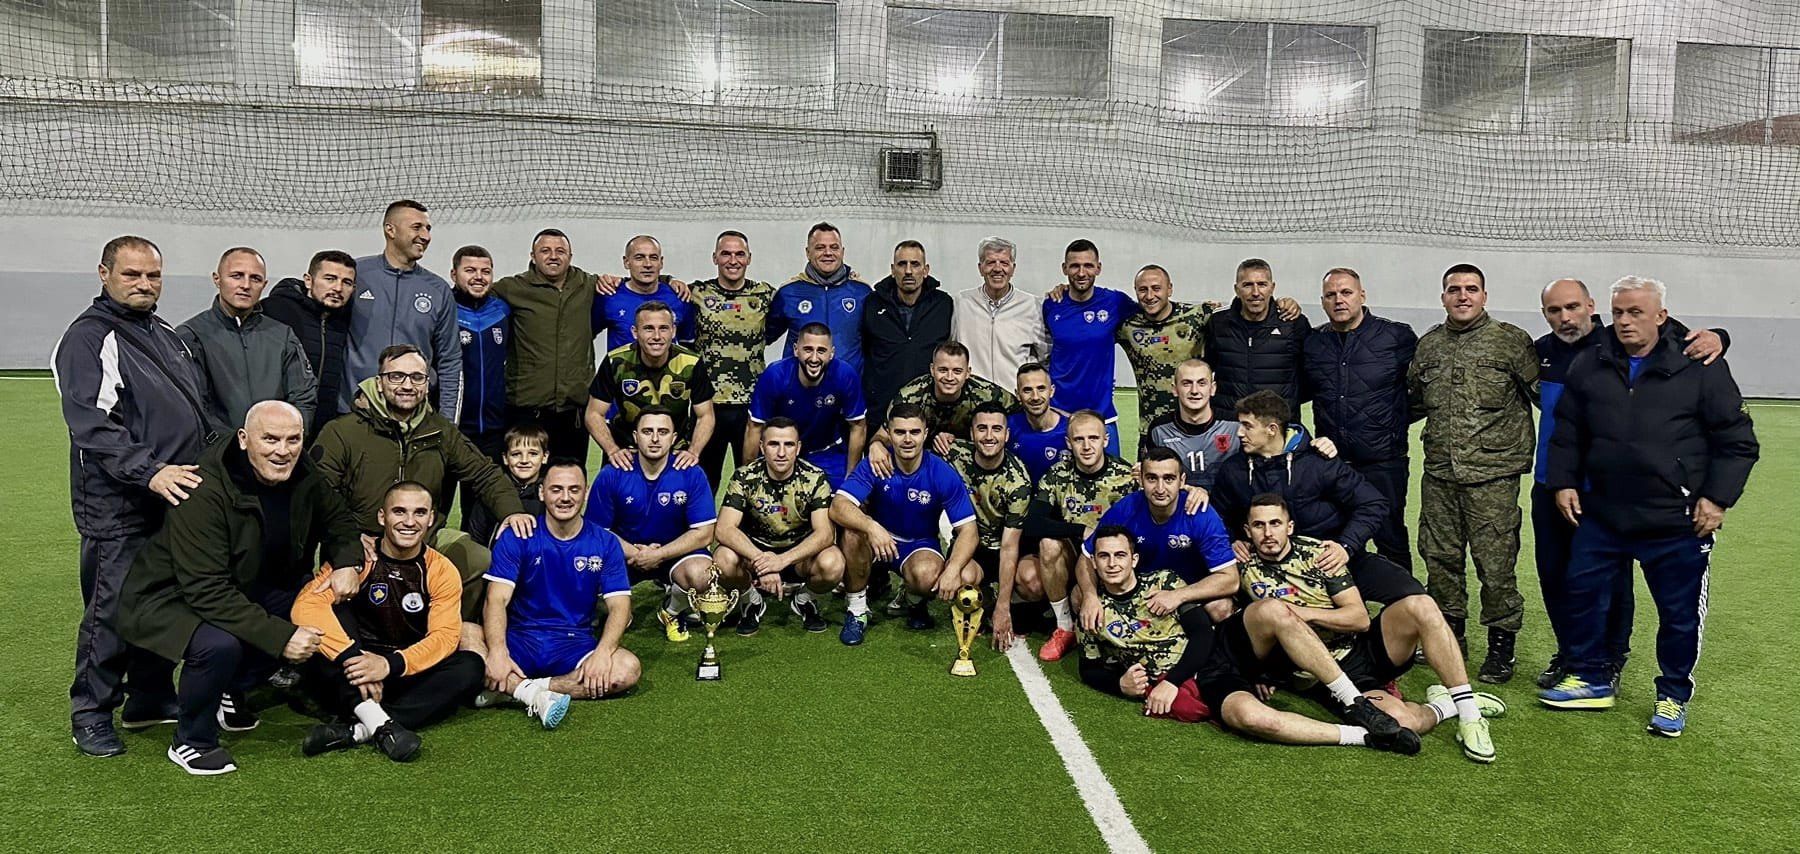 Pa asnjë humbje, ekipi i Policisë së Kosovës në futboll shpallet kampion në ligën e FPK-ës